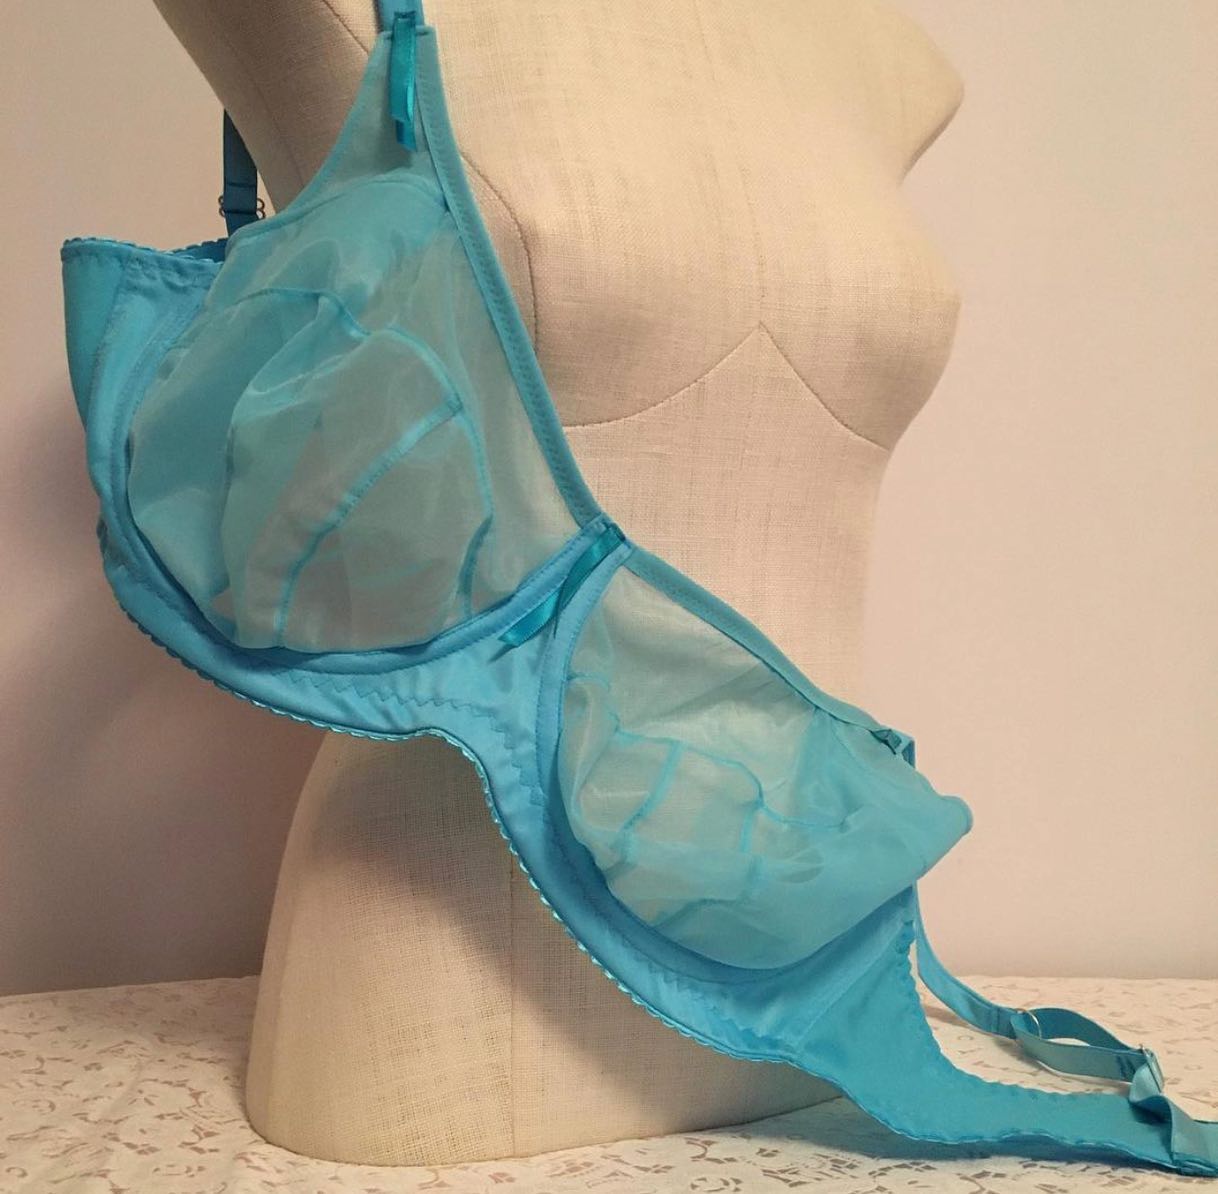 Sheer Bra Kit - make your own custom bra - Bra-Makers Supply